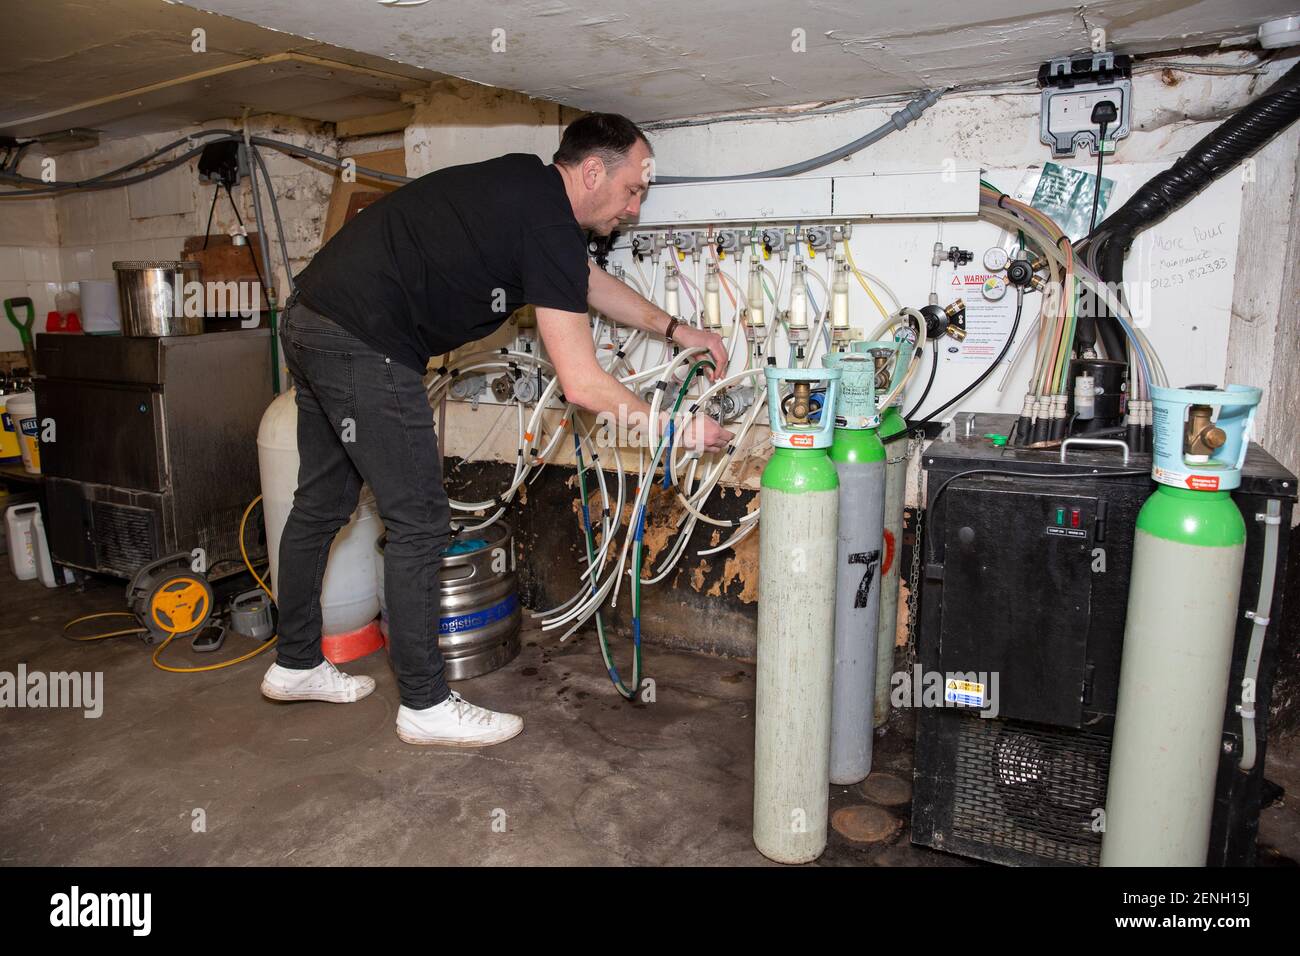 Sean Hughes propietario de 'Dylans' pub en St Albans prepara barricas de cerveza para reabrir su pub después de que el cierre de seguridad de coronavirus#3 sea levantado en Inglaterra. Foto de stock